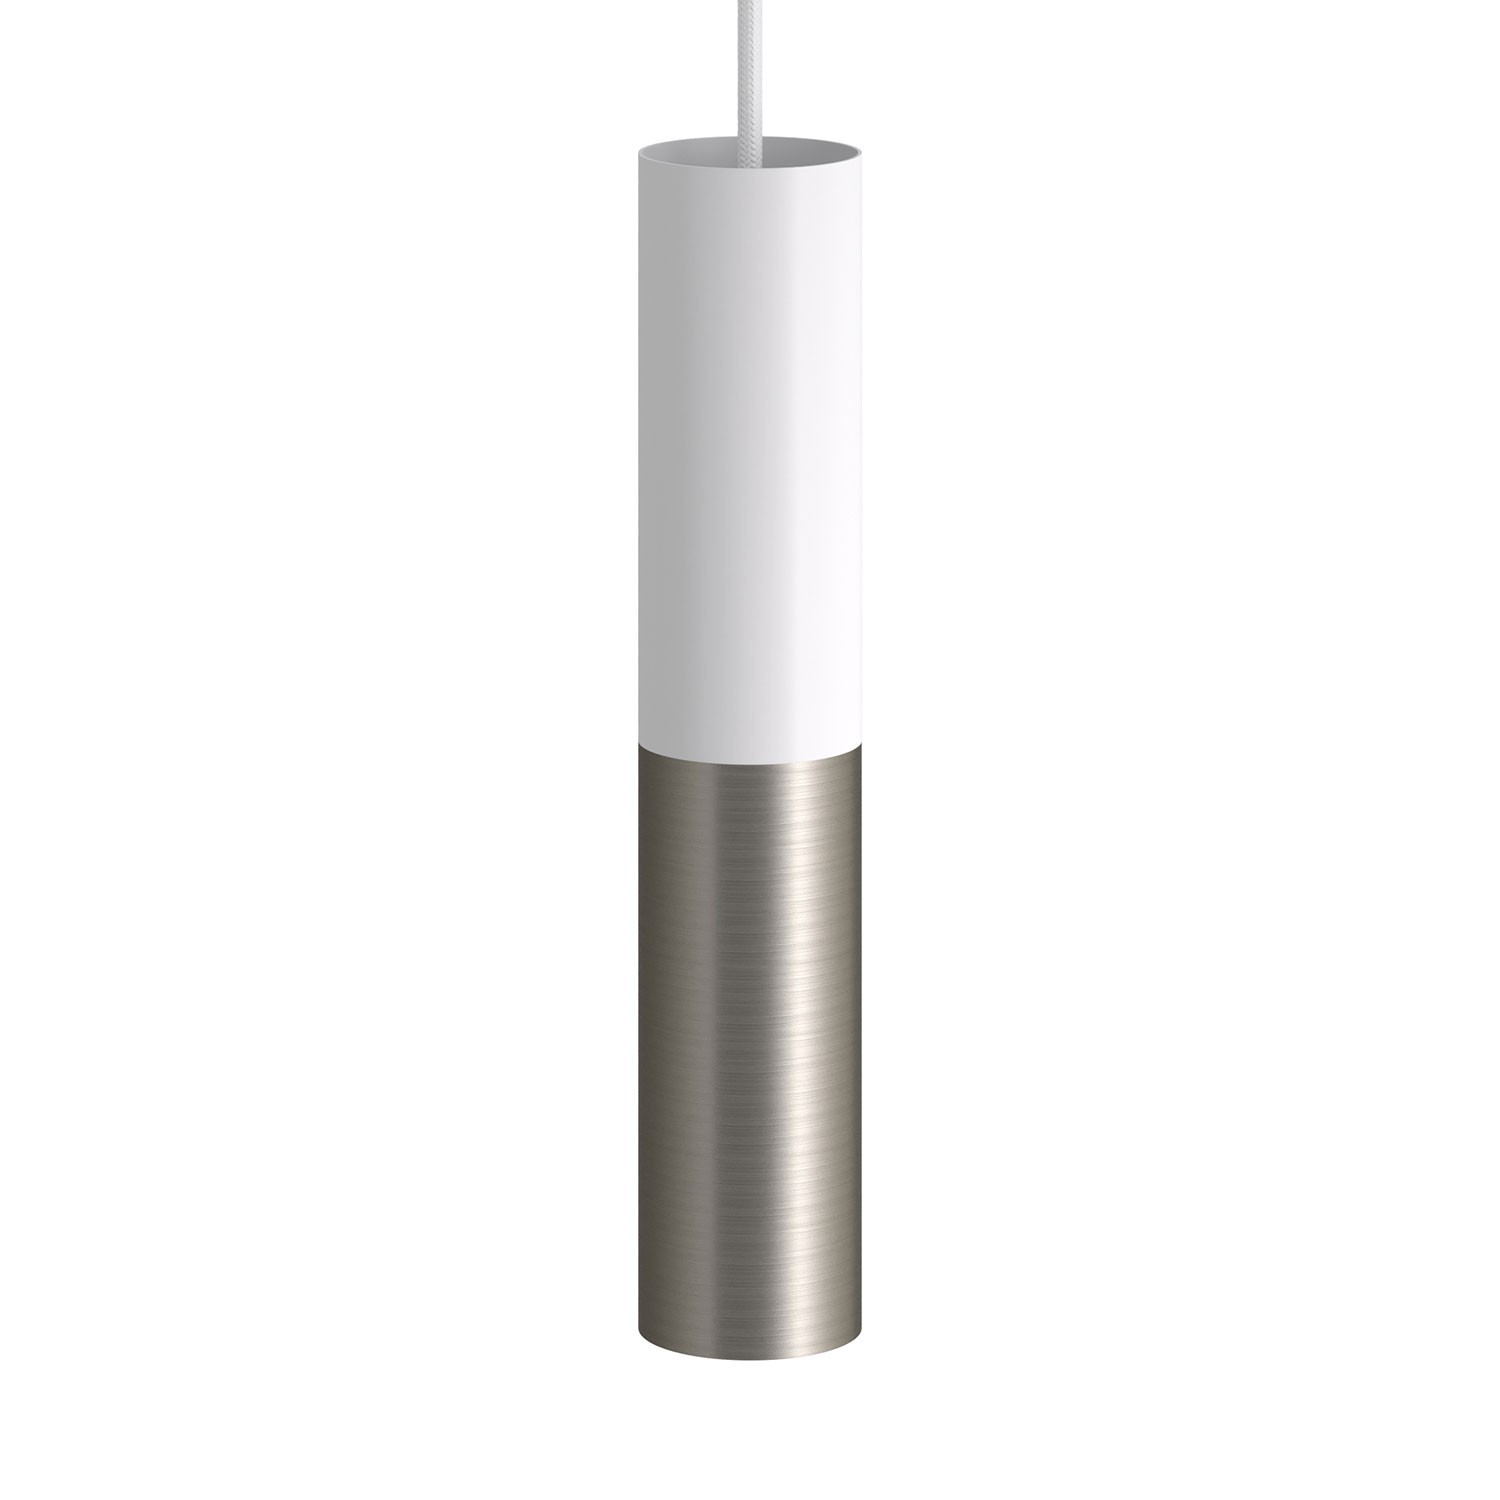 Made in Italy hanglamp compleet met strijkijzersnoer en dubbele Tub-E14 lampenkap